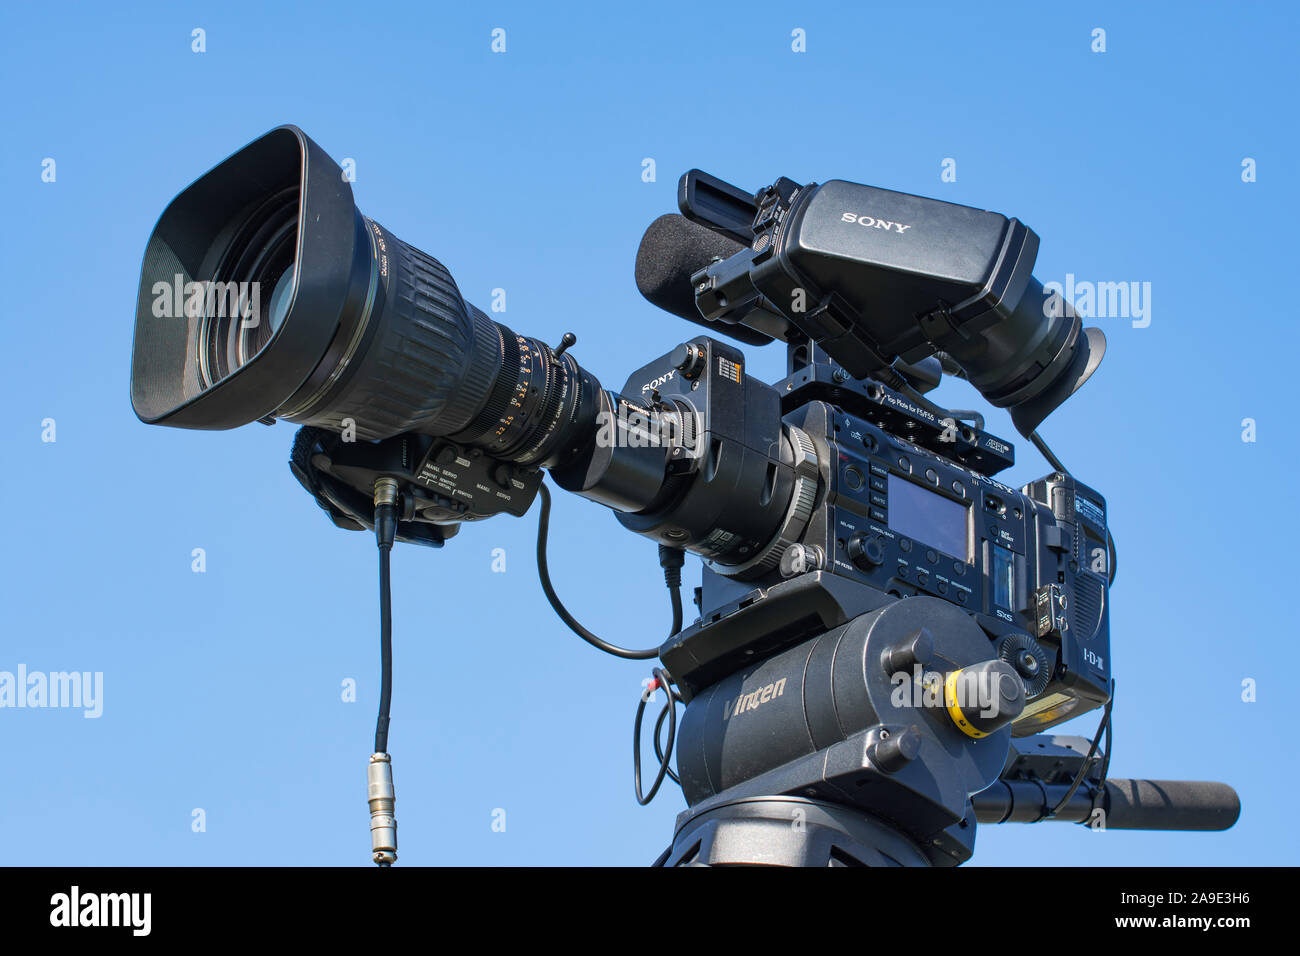 Professionelle Sony Video Kamera und Objektiv Canon wird der Film zu einem Outdoor Video Projekt verwendet werden. Russland, Moskau, 30. August 2019 Stockfoto